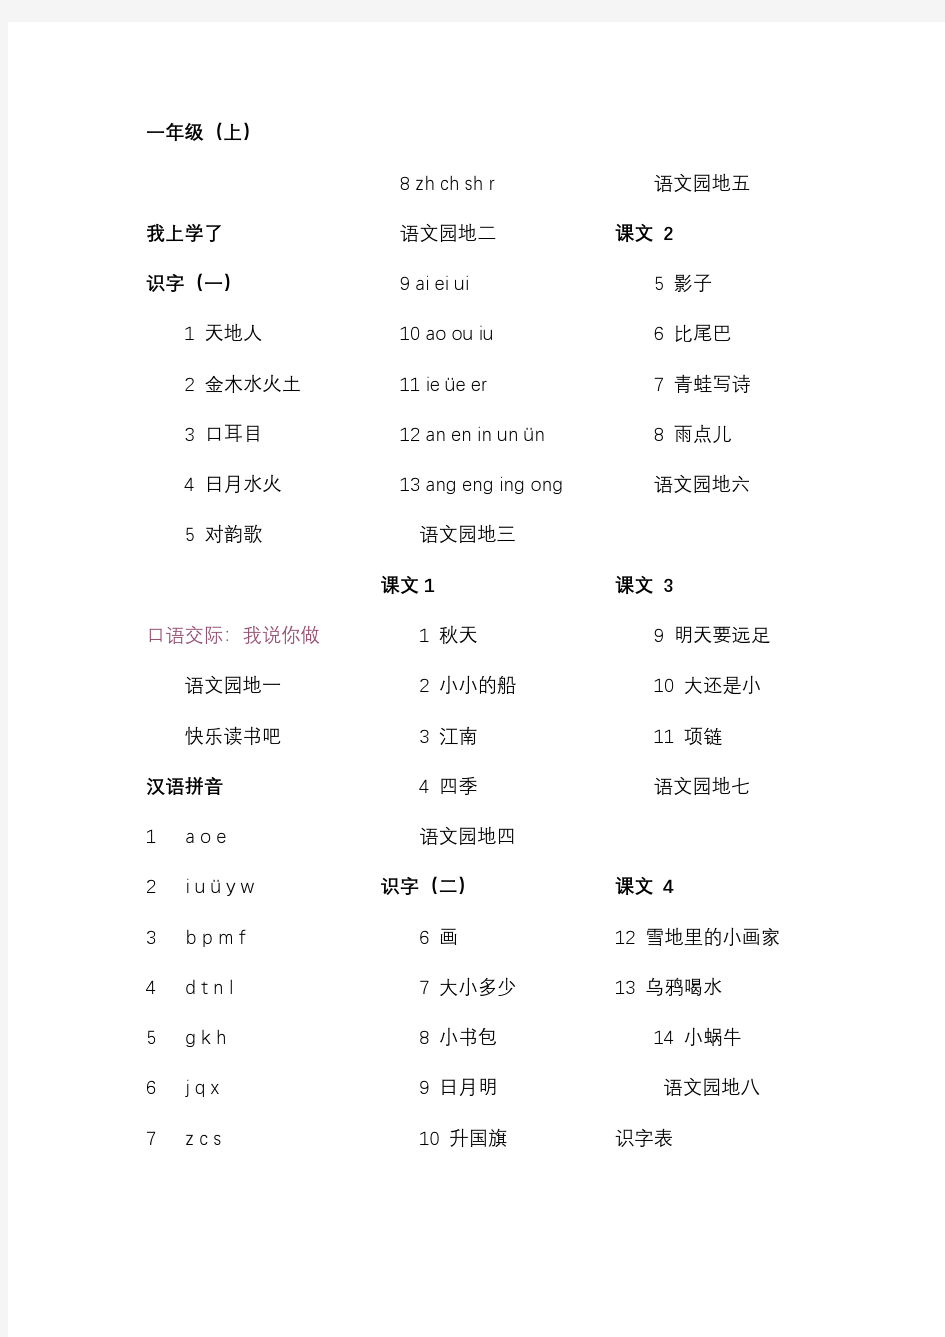 上海语文各年级教材目录(1-5非全)